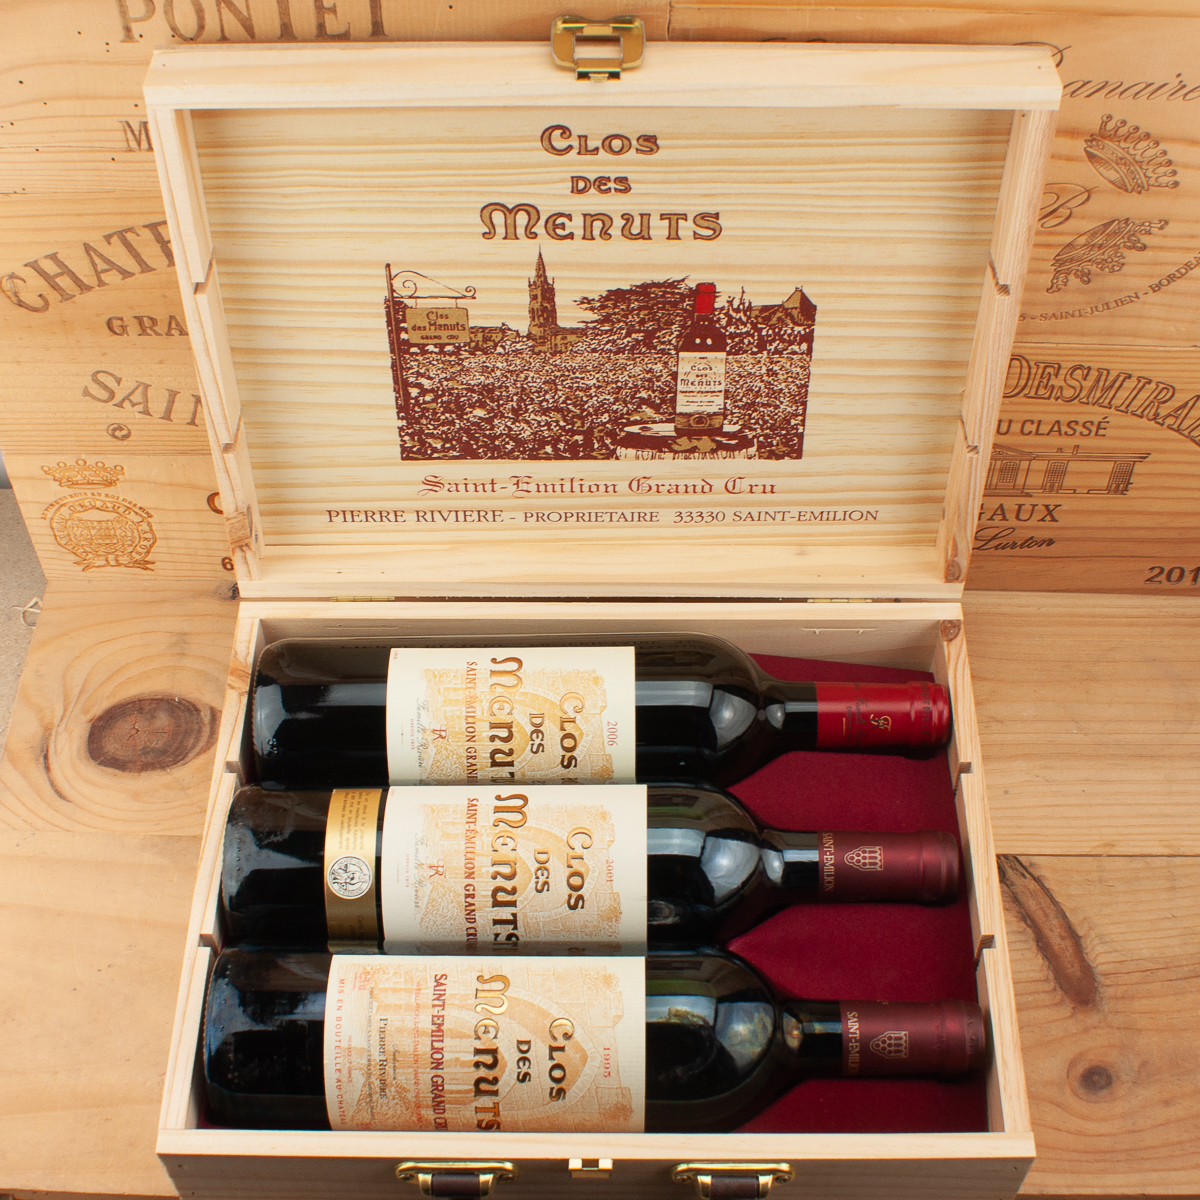 Wine-vertical Clos des Menuts Grand Cru vintage 1960